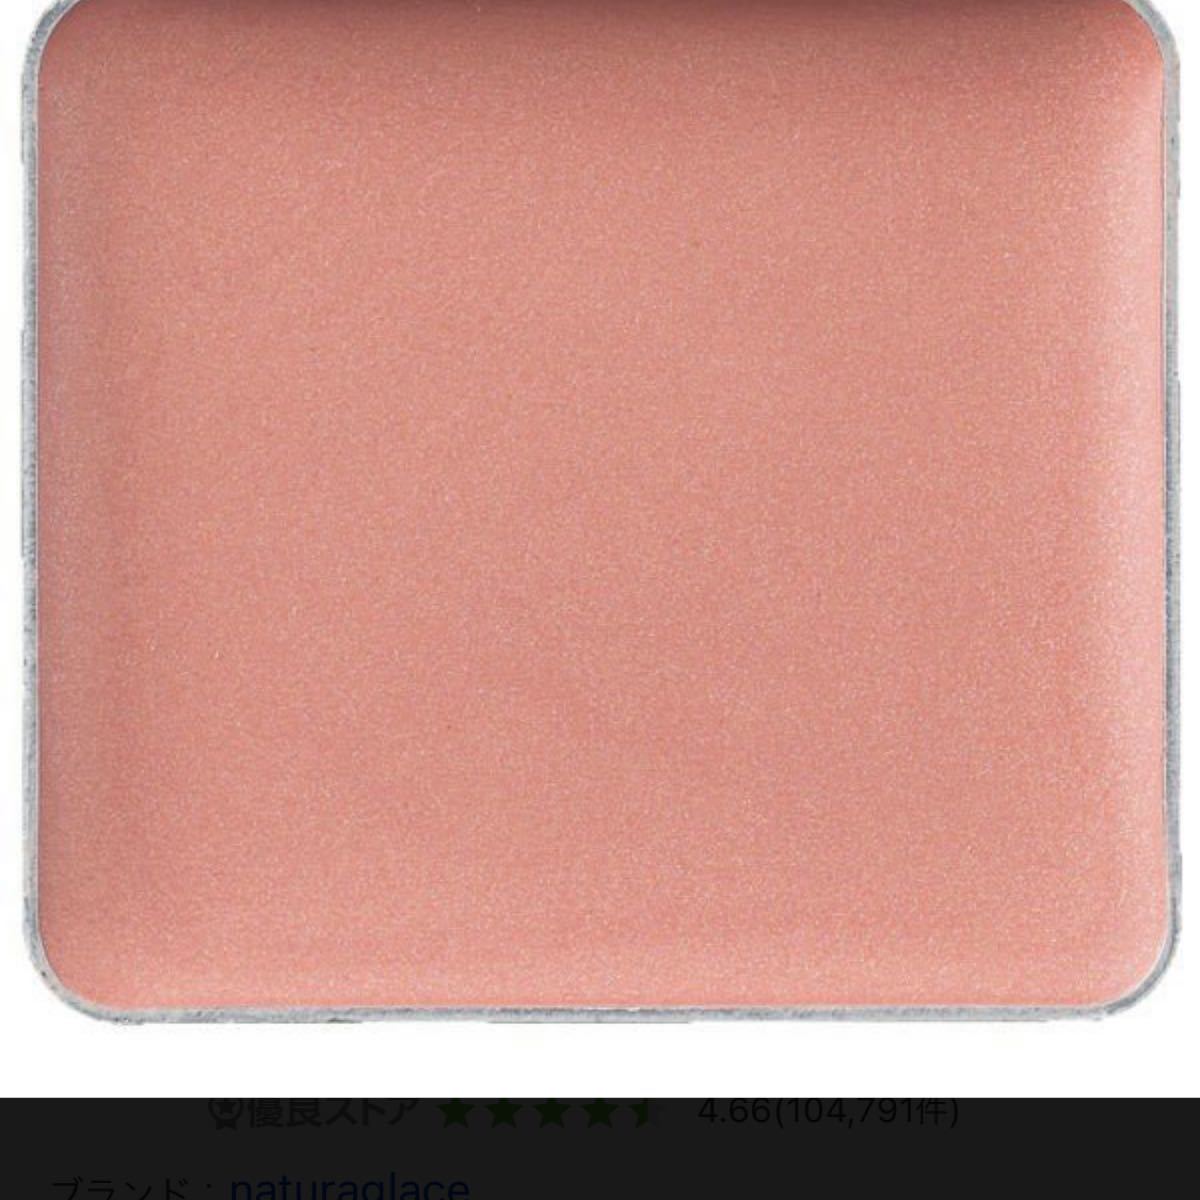 ナチュラグラッセ タッチオンカラーズ (パール) 03P ピンク 指塗りマルチカラー アイシャドウ 2.0グラム (x 1)